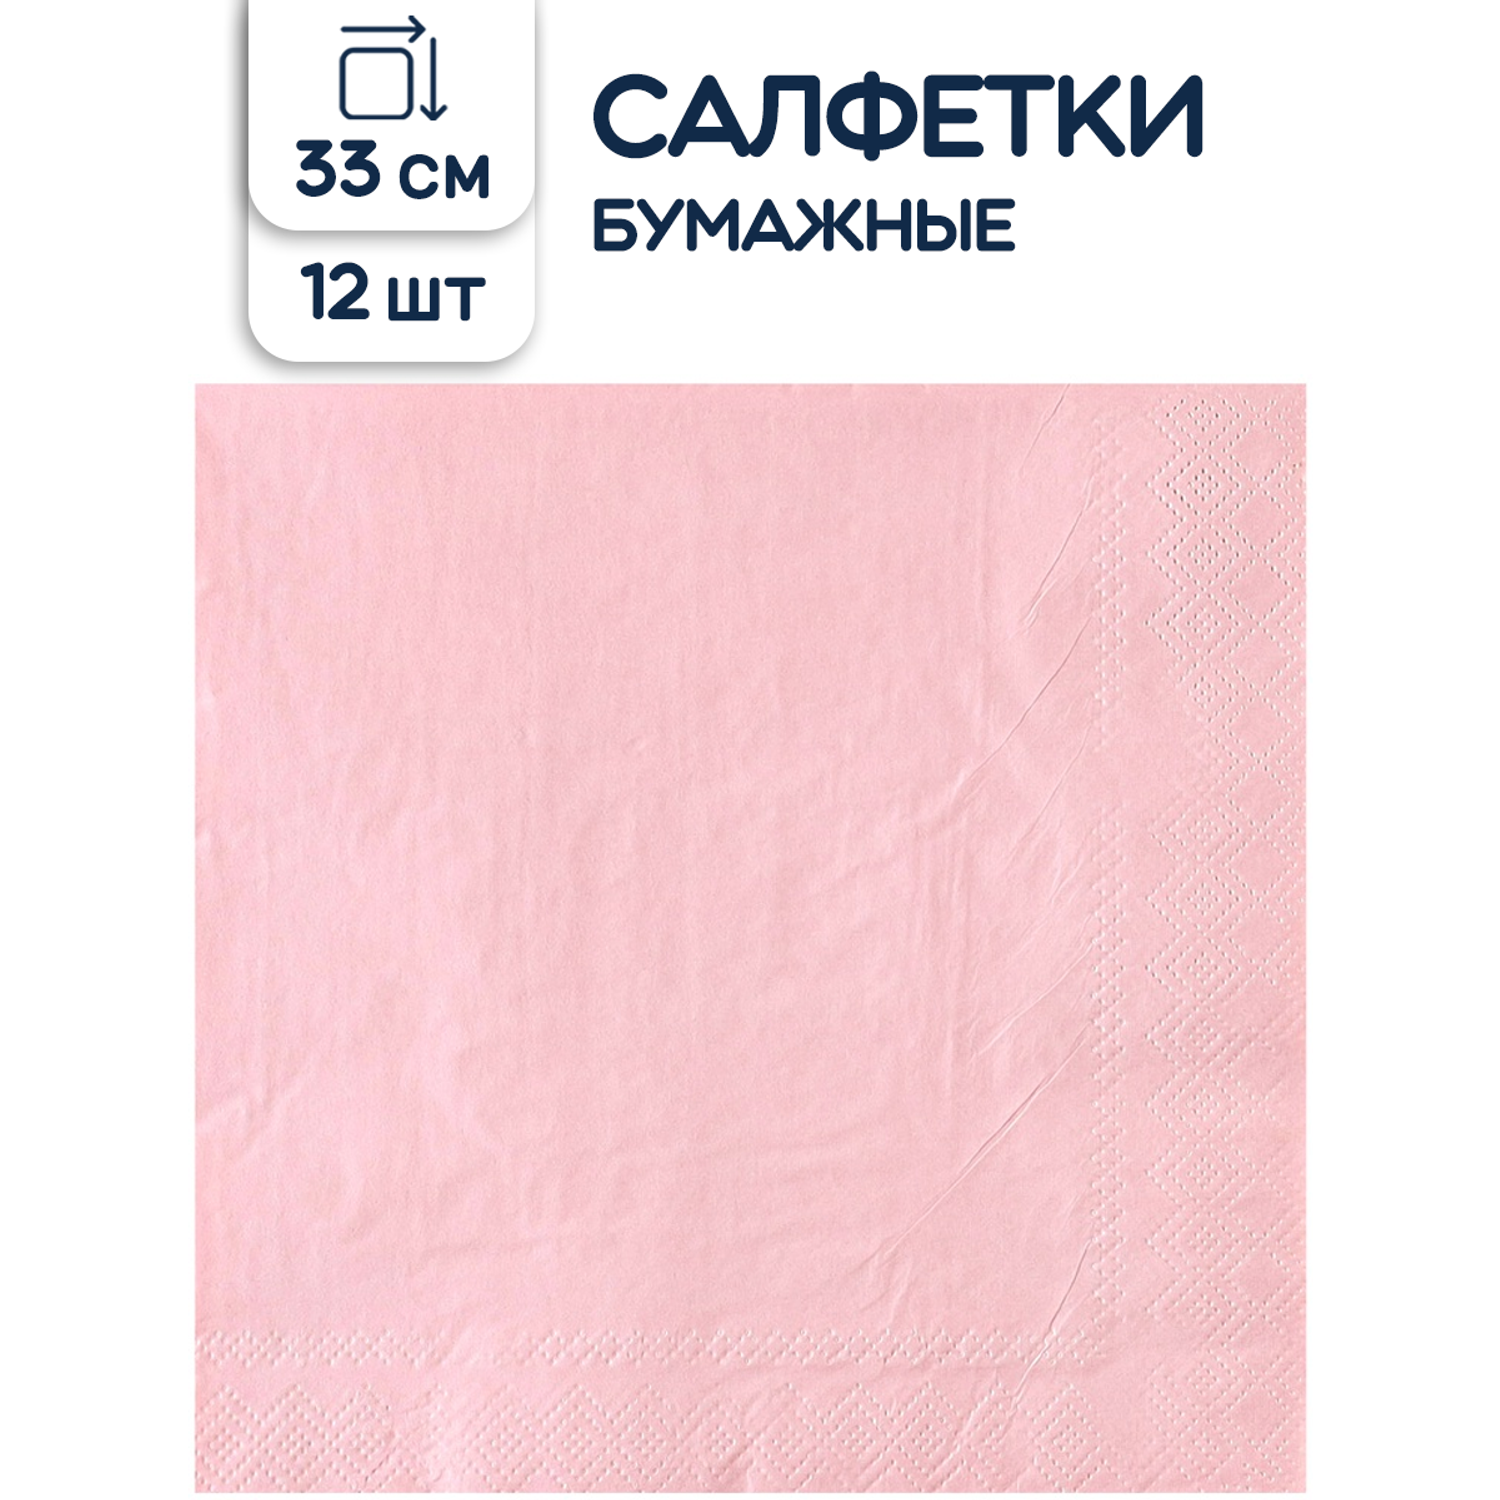 Салфетки бумажные Riota двухслойные розовые 33 см 12 шт - фото 1